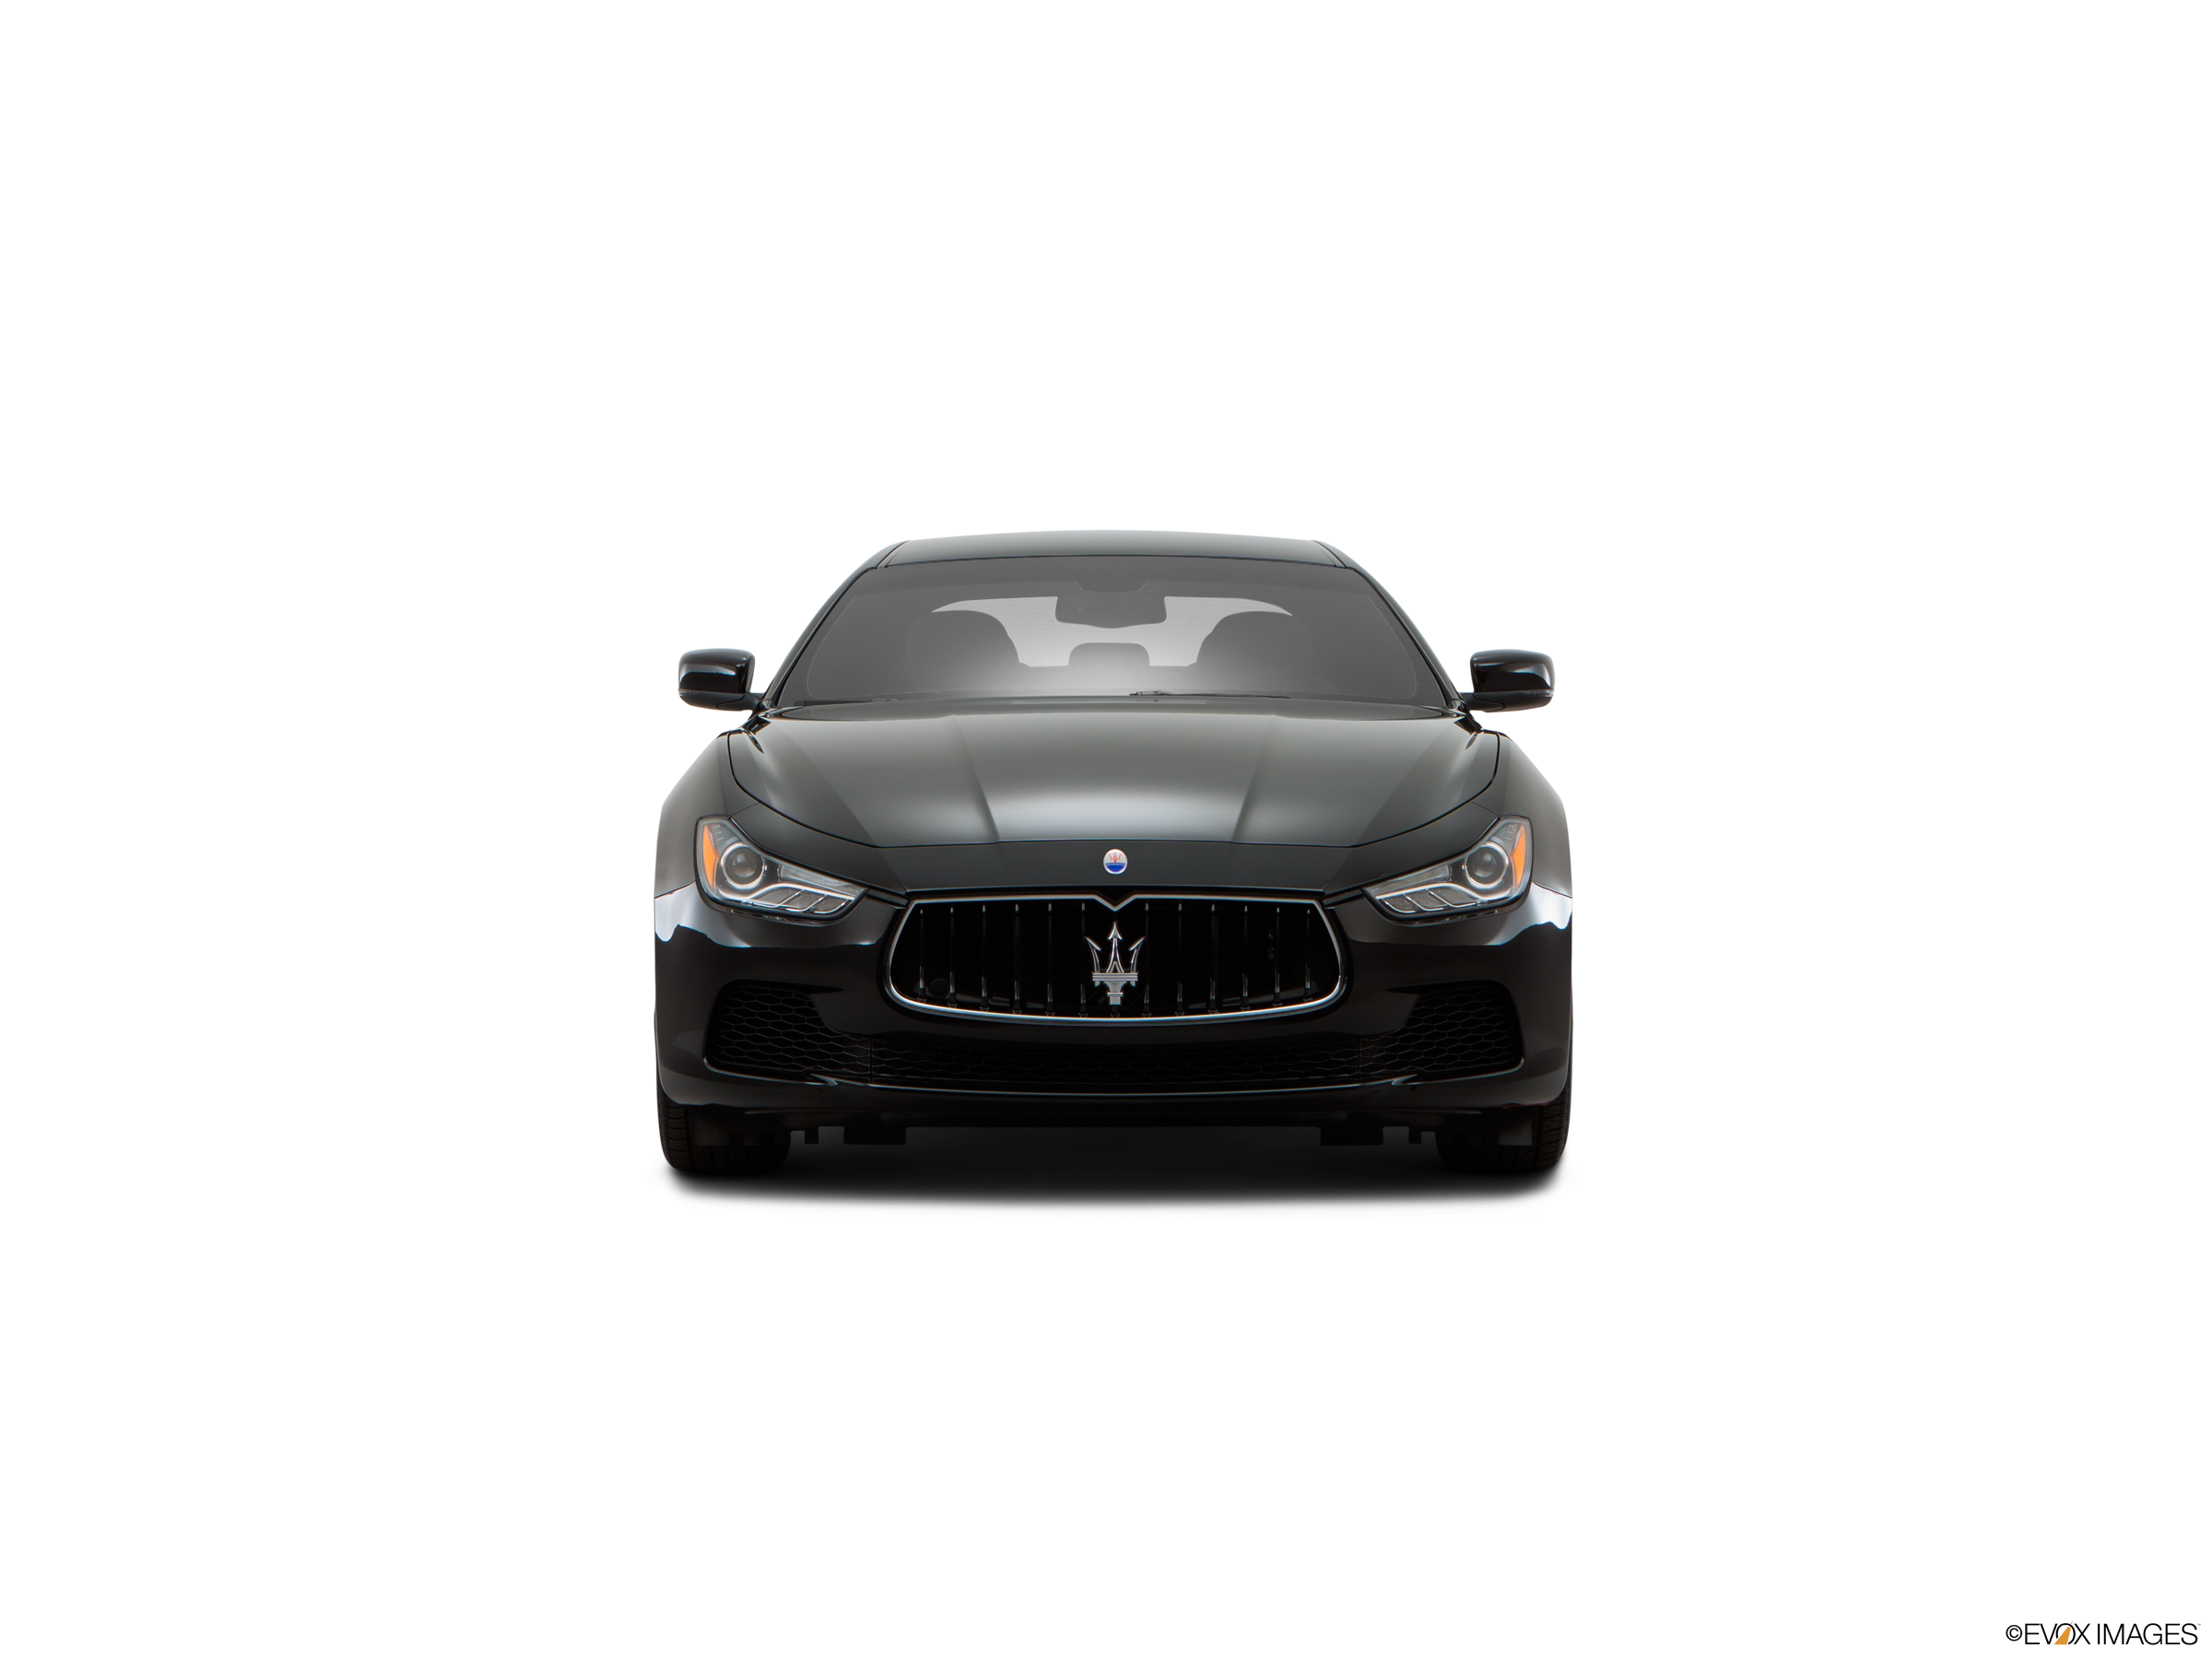 2016 Maserati Ghibli Price, Value, Ratings & Reviews